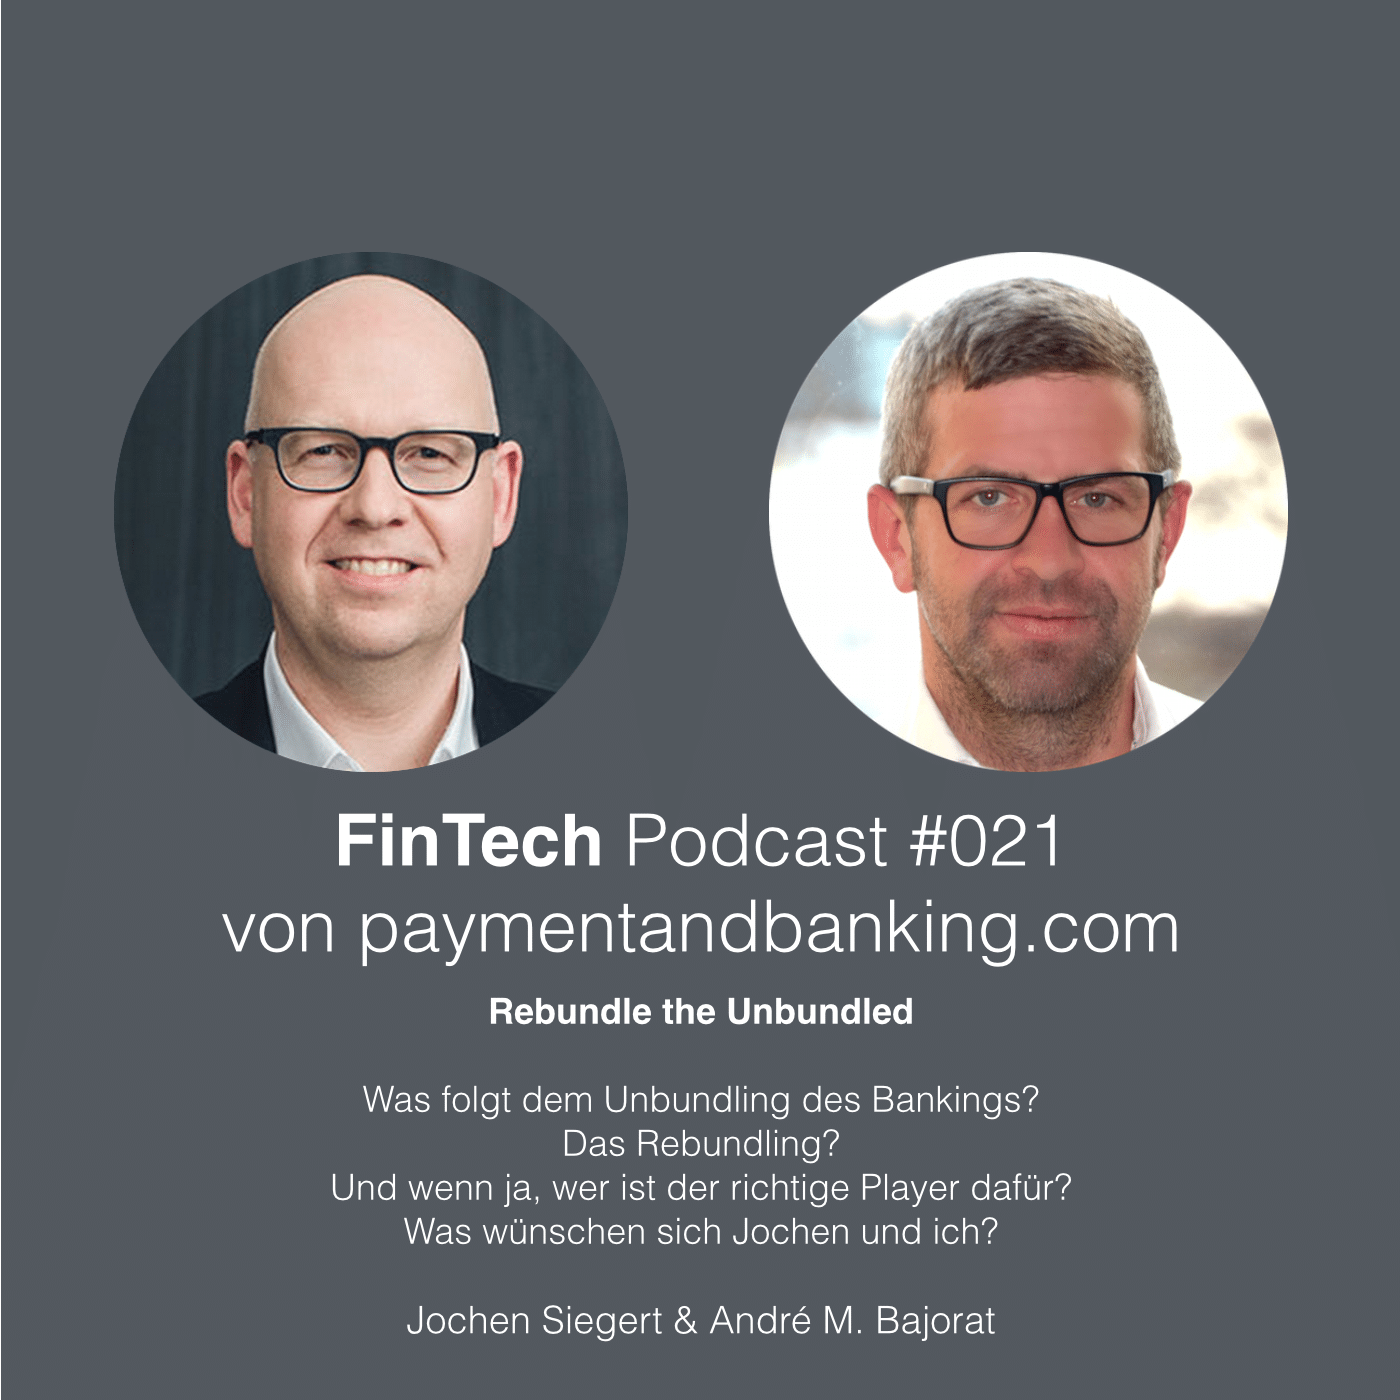 Fintech Podcast #021